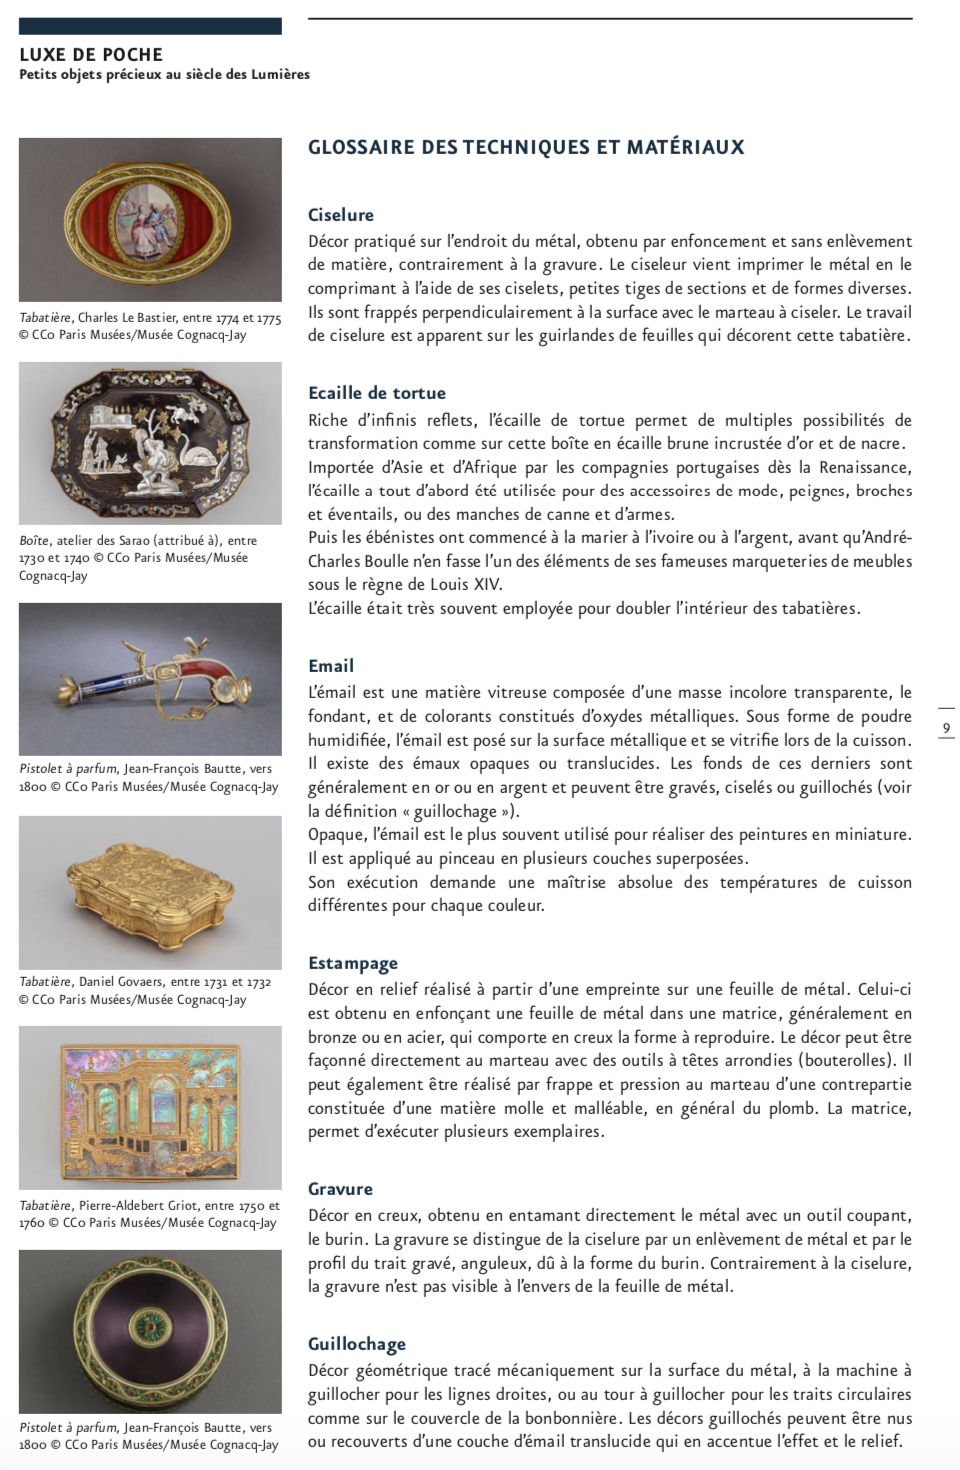 Exposition : Luxe de poche - Petits objets précieux au siècle des Lumières. Musée Cognacq-Jay Capt5779